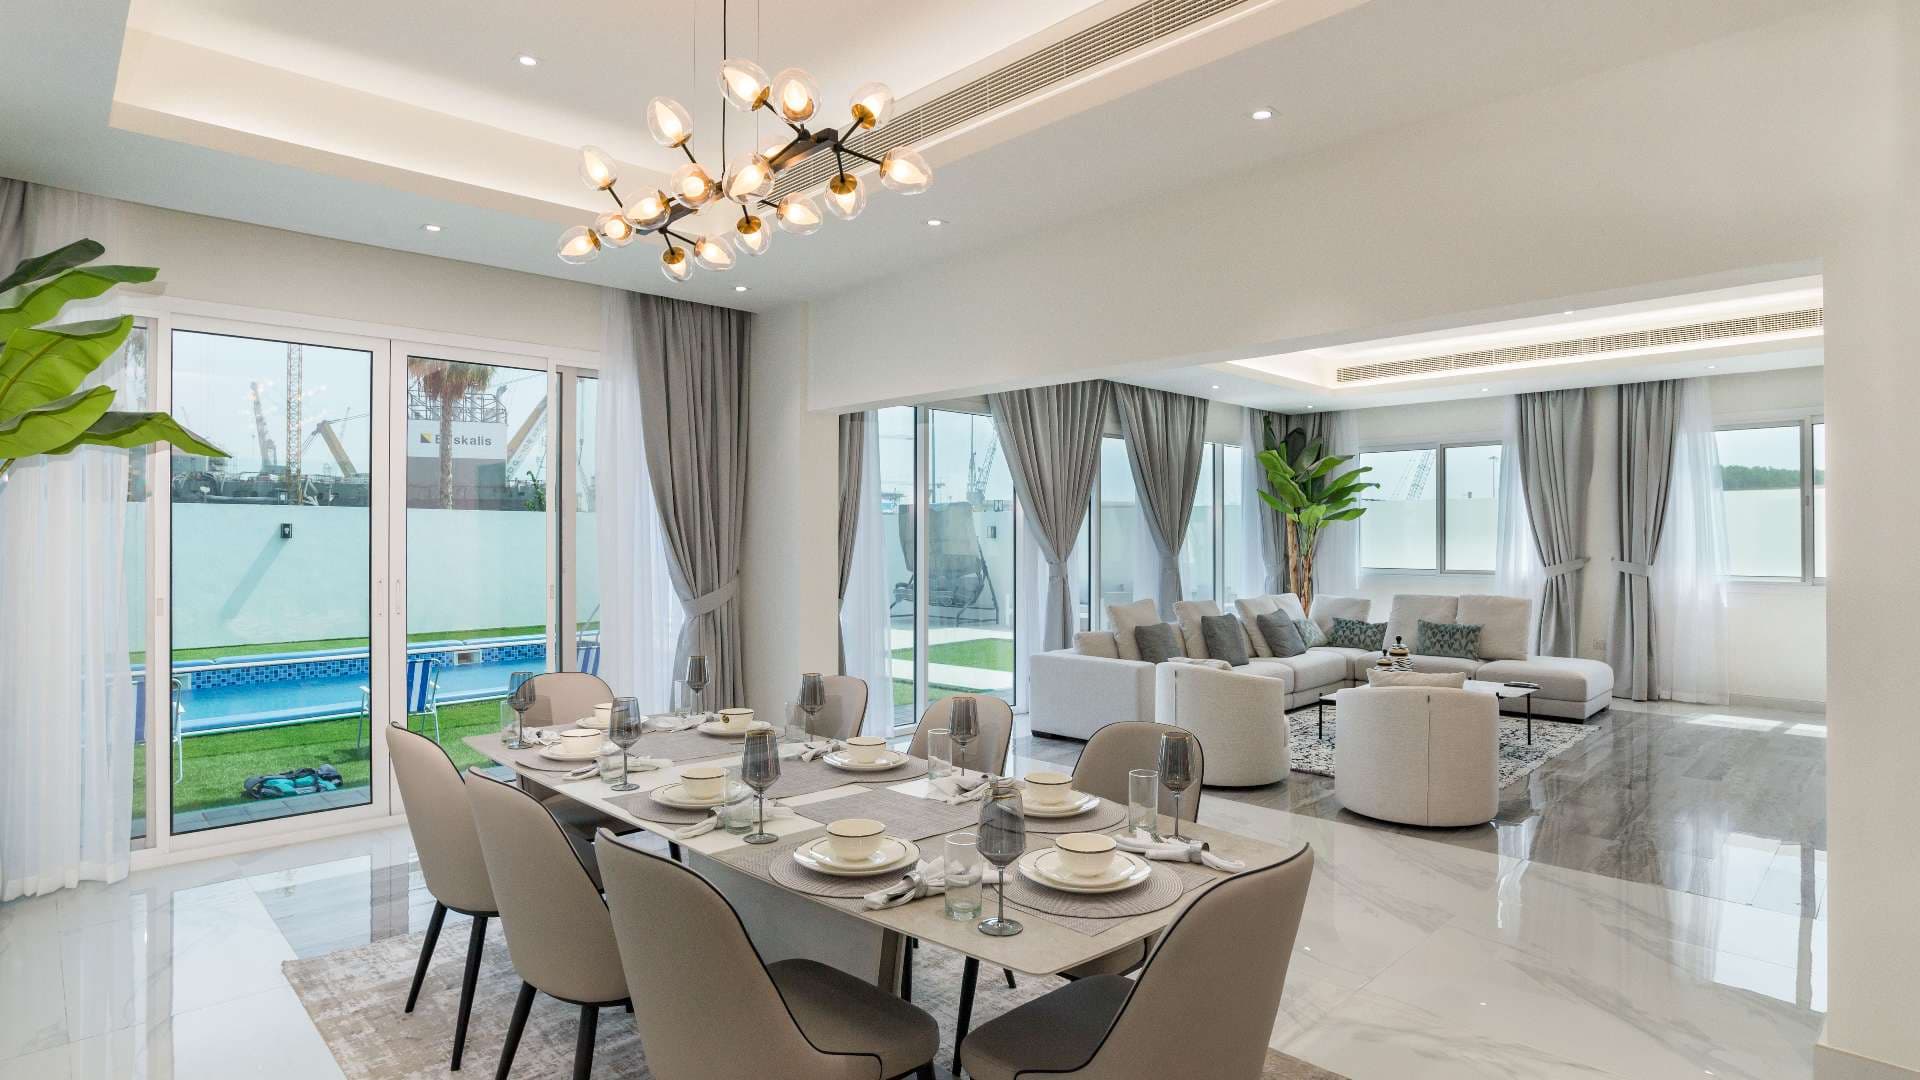 6 Bedroom Villa For Sale Pearl Jumeirah Lp08107 28a0a2eda96a6400.jpeg